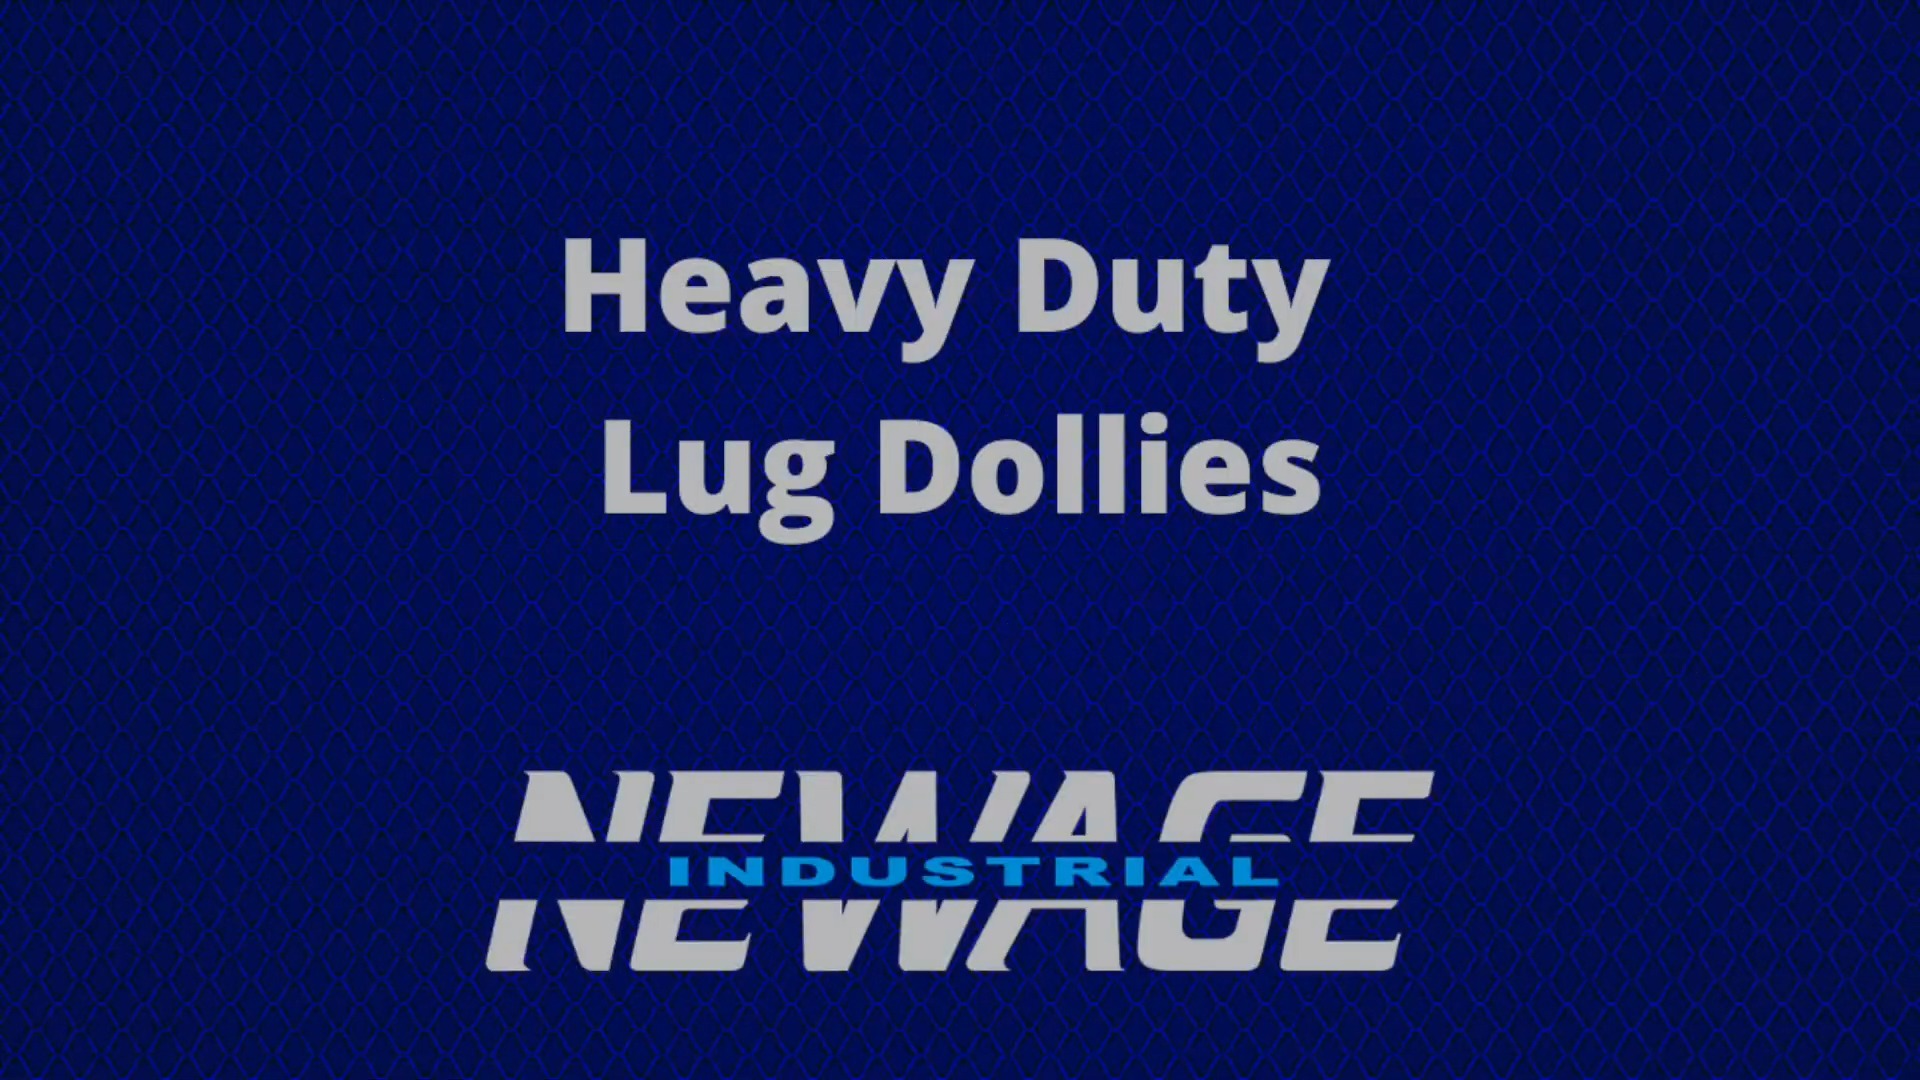 Heavy Duty Lug Dollies